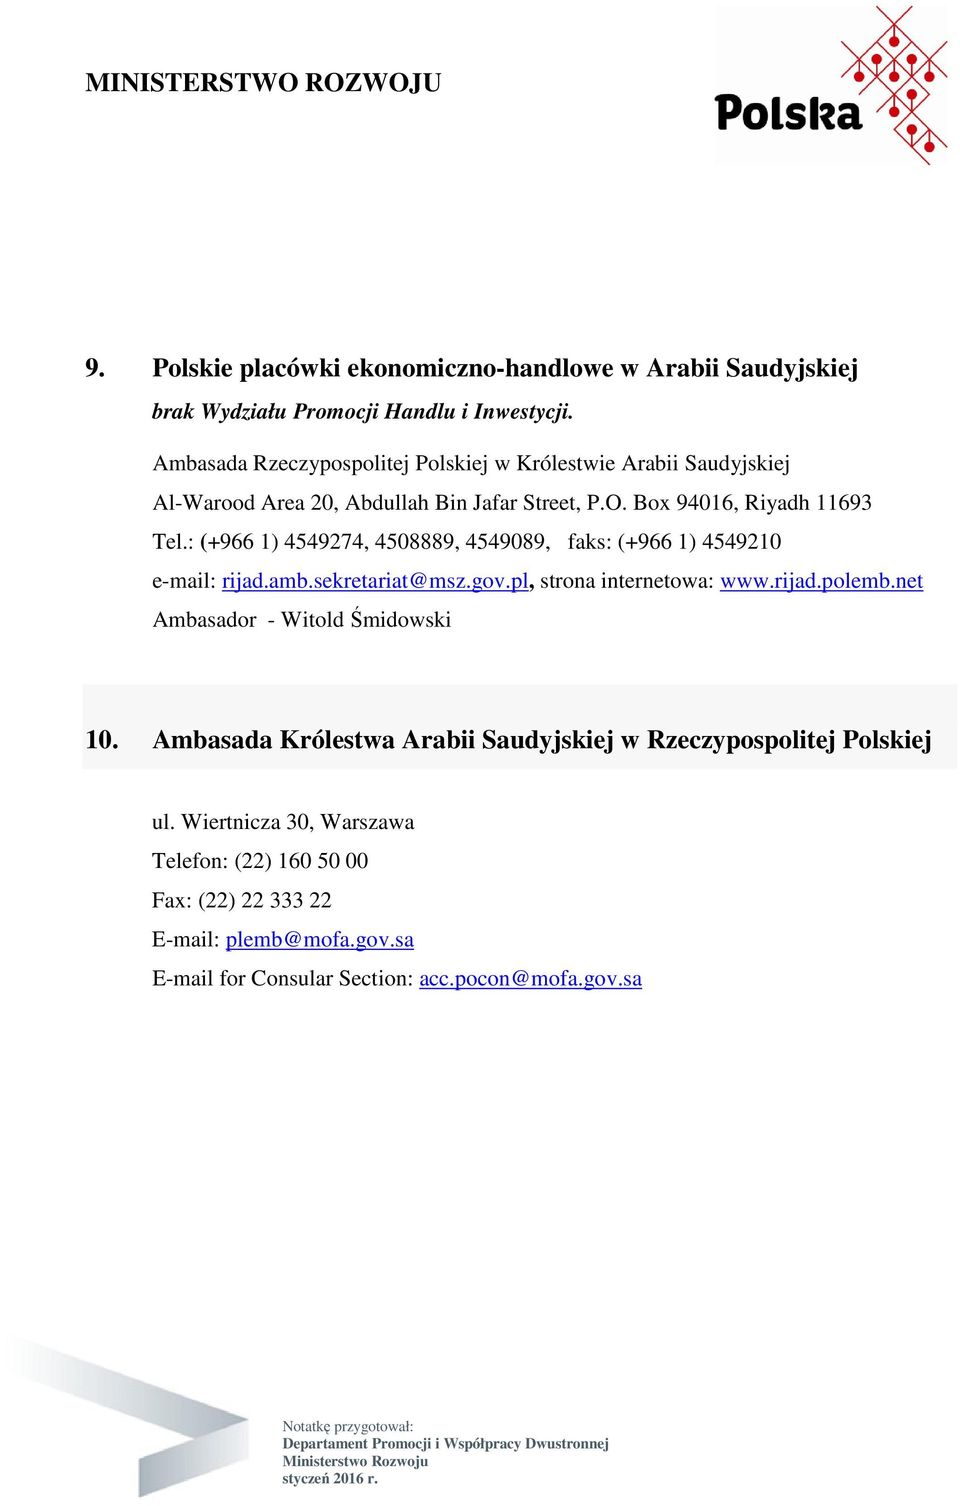 : (+966 1) 4549274, 4508889, 4549089, faks: (+966 1) 4549210 e-mail: rijad.amb.sekretariat@msz.gov.pl, strona internetowa: www.rijad.polemb.